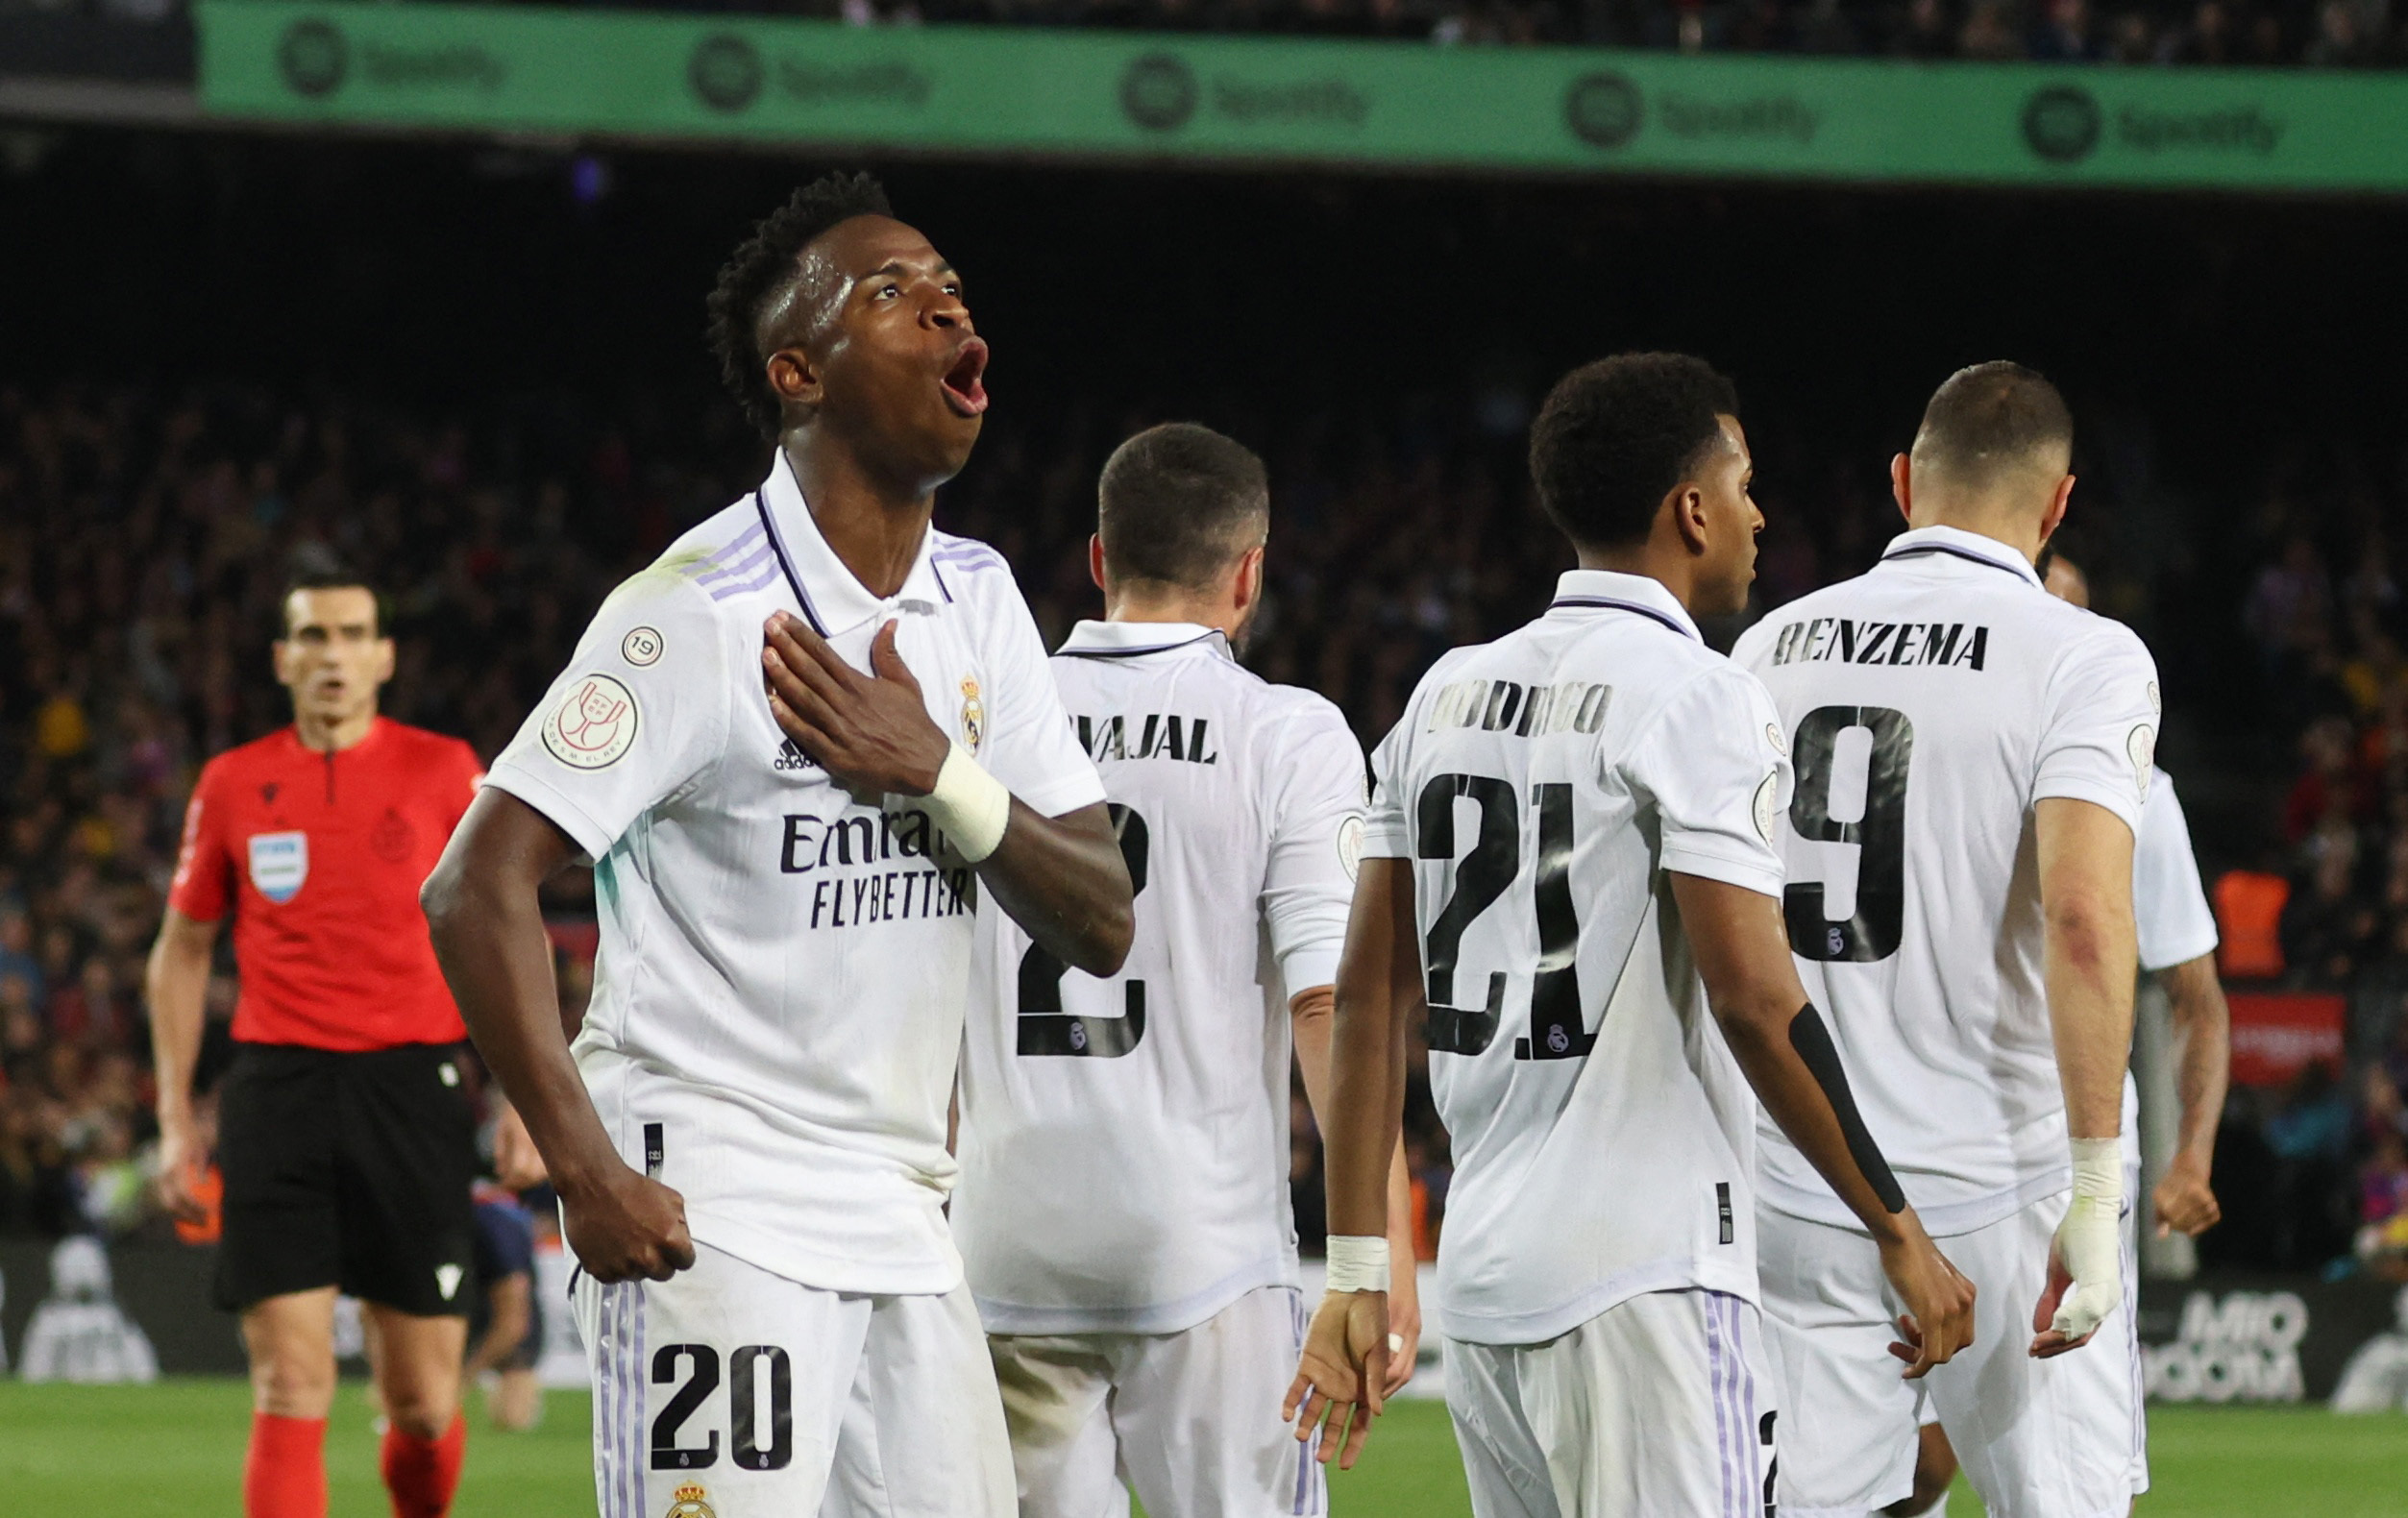 El festejo de Vinícius Jr. en el primer gol del encuentro para Real Madrid (REUTERS/Nacho Doce)